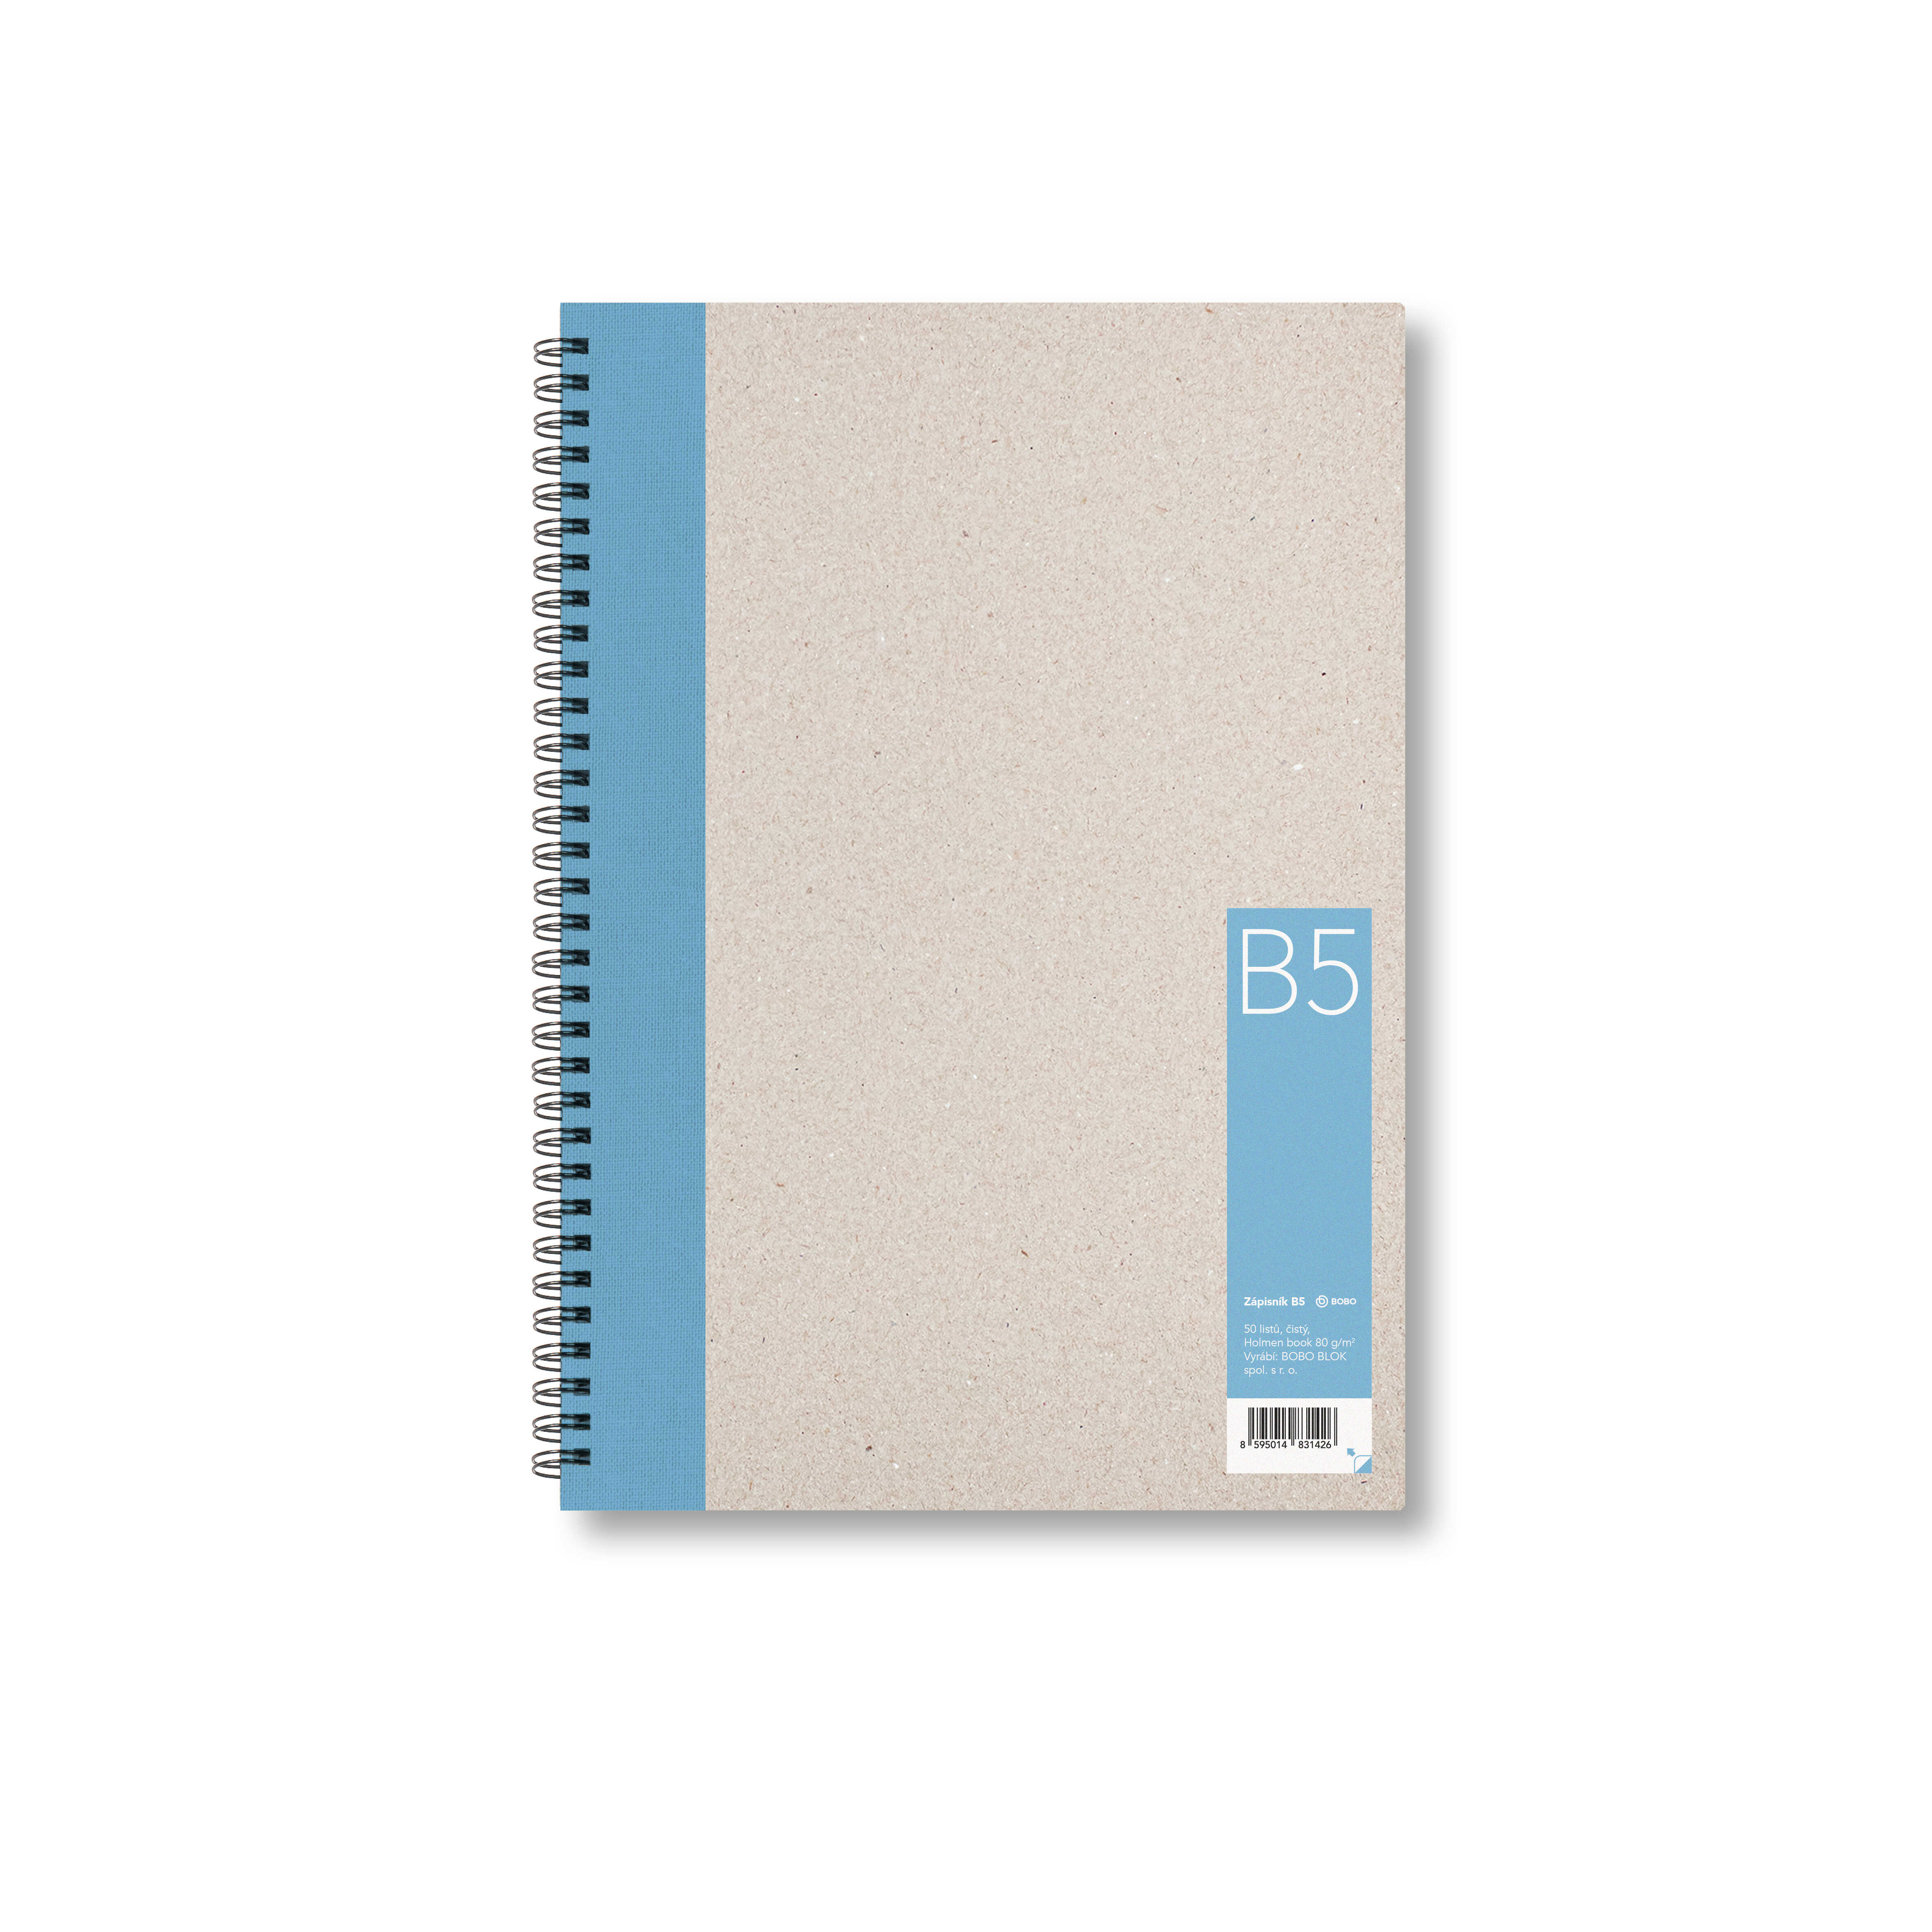 Zápisník Bobo B5, čistý, světle modrý